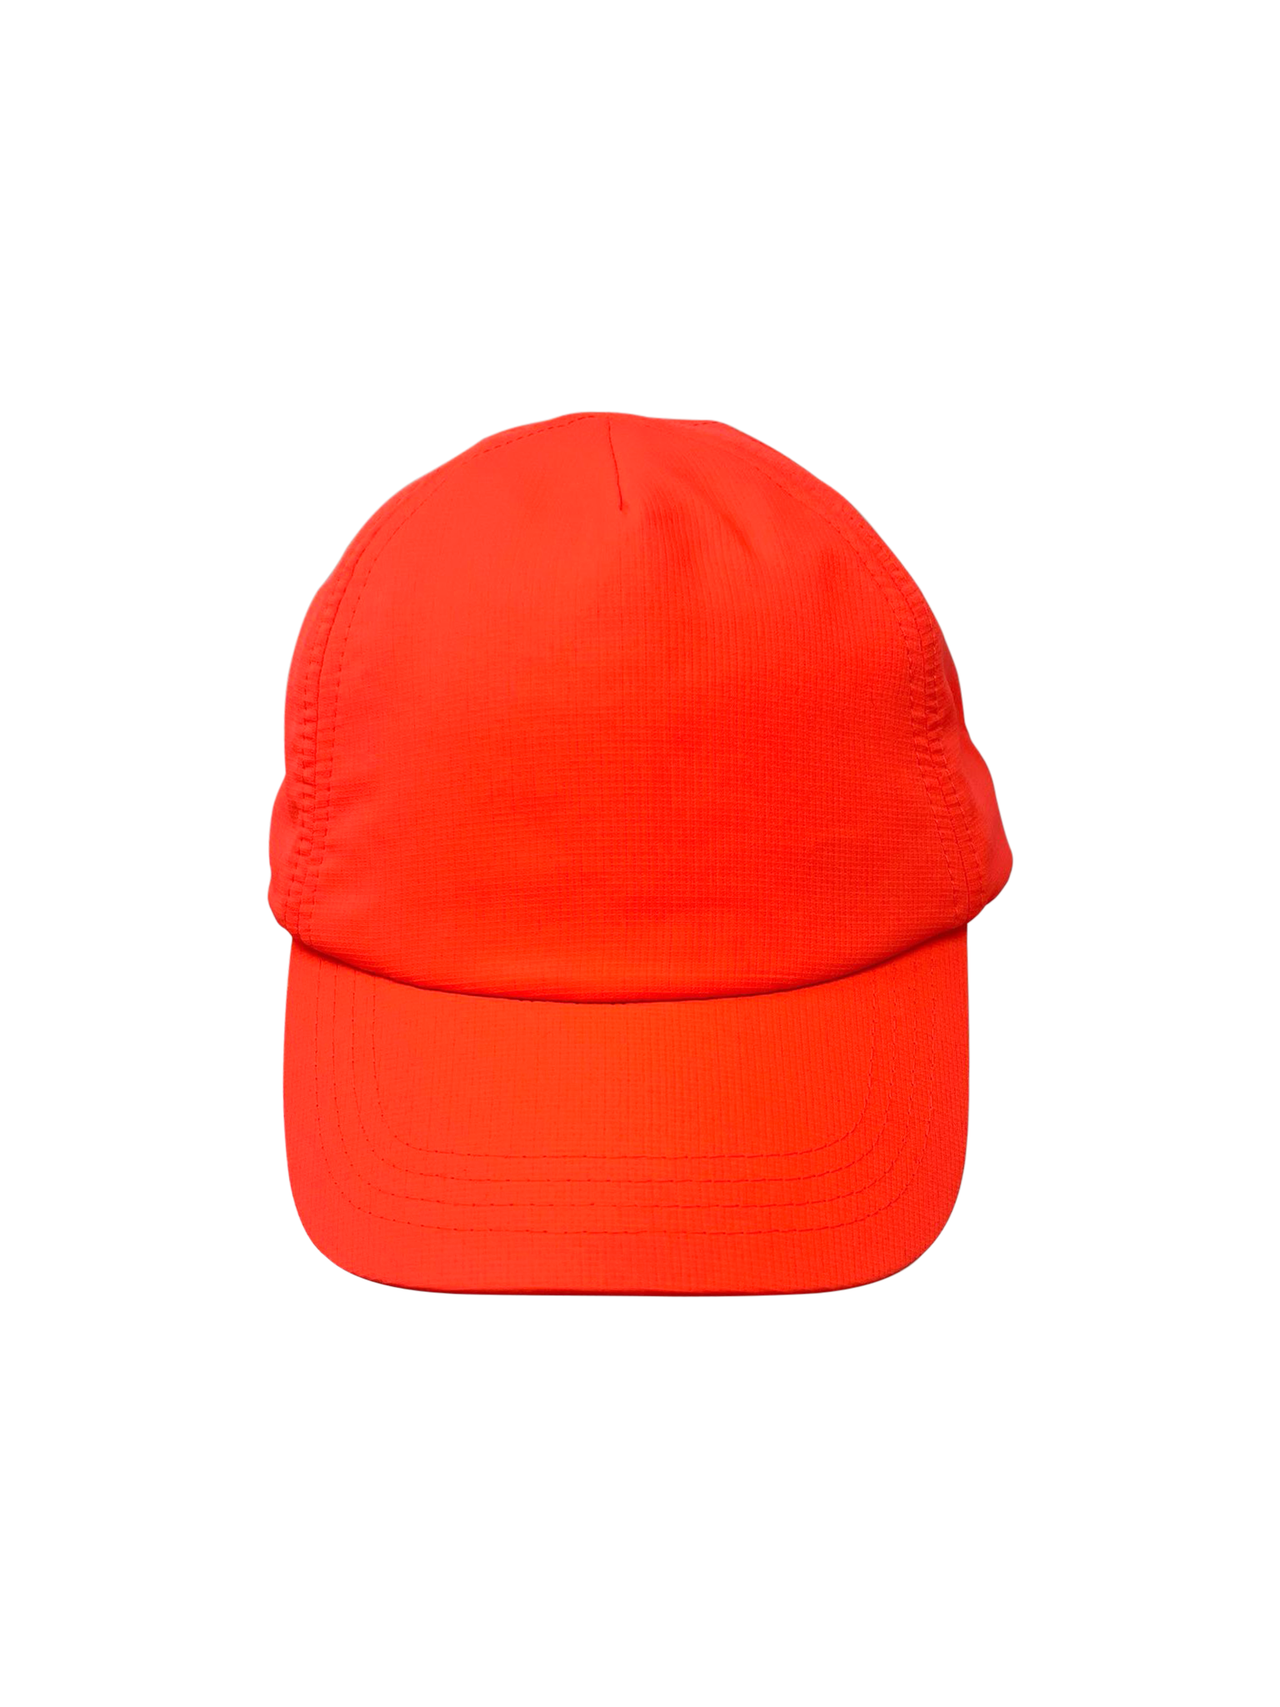 Kids Water Proof Safety Hat Neon Orange